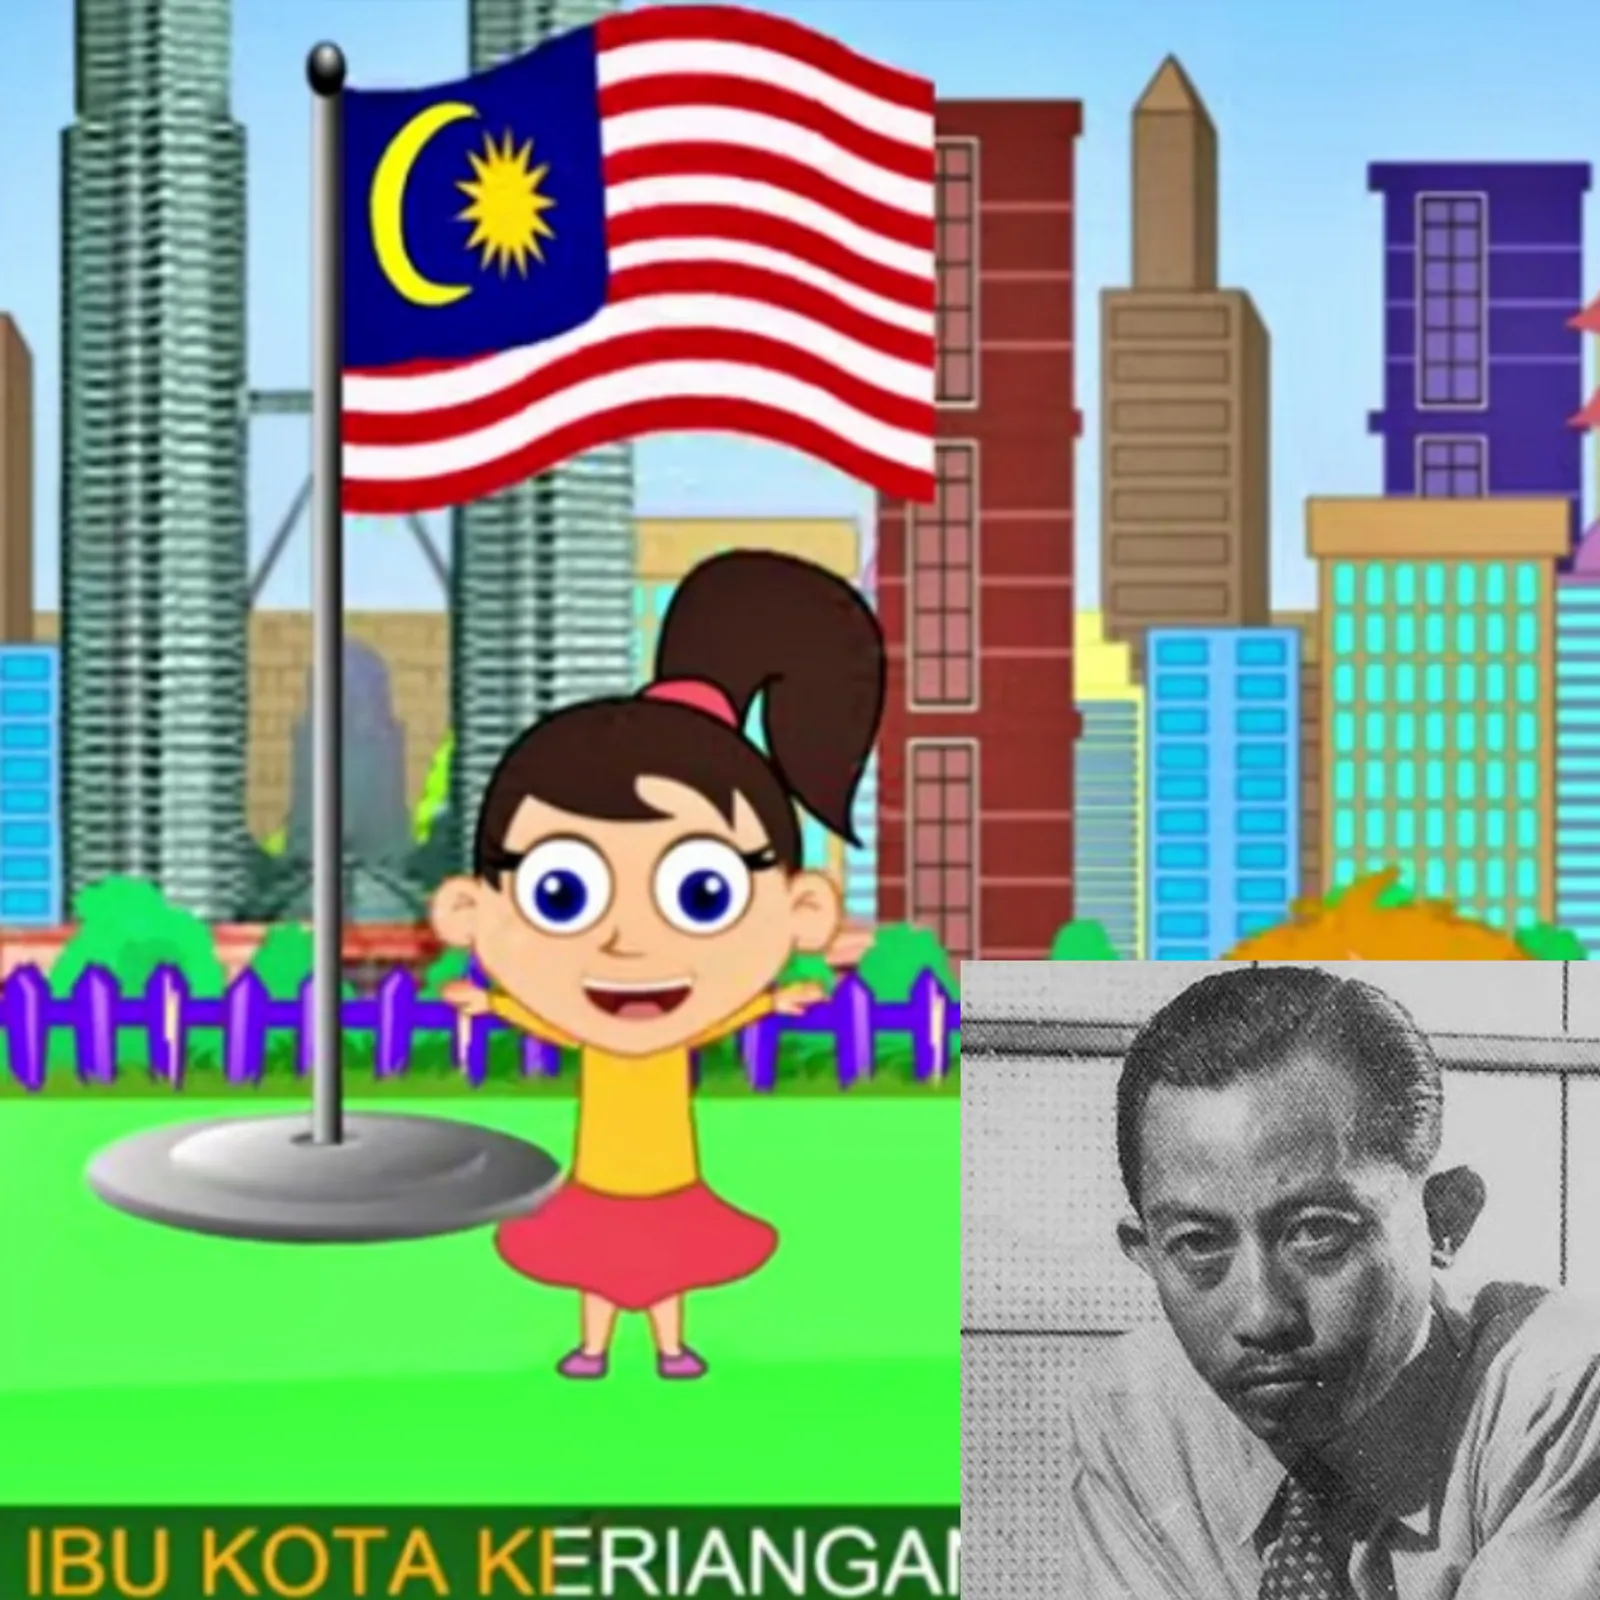 Heboh di Twitter, Malaysia Diduga Menjiplak Lagu "Halo-Halo Bandung"